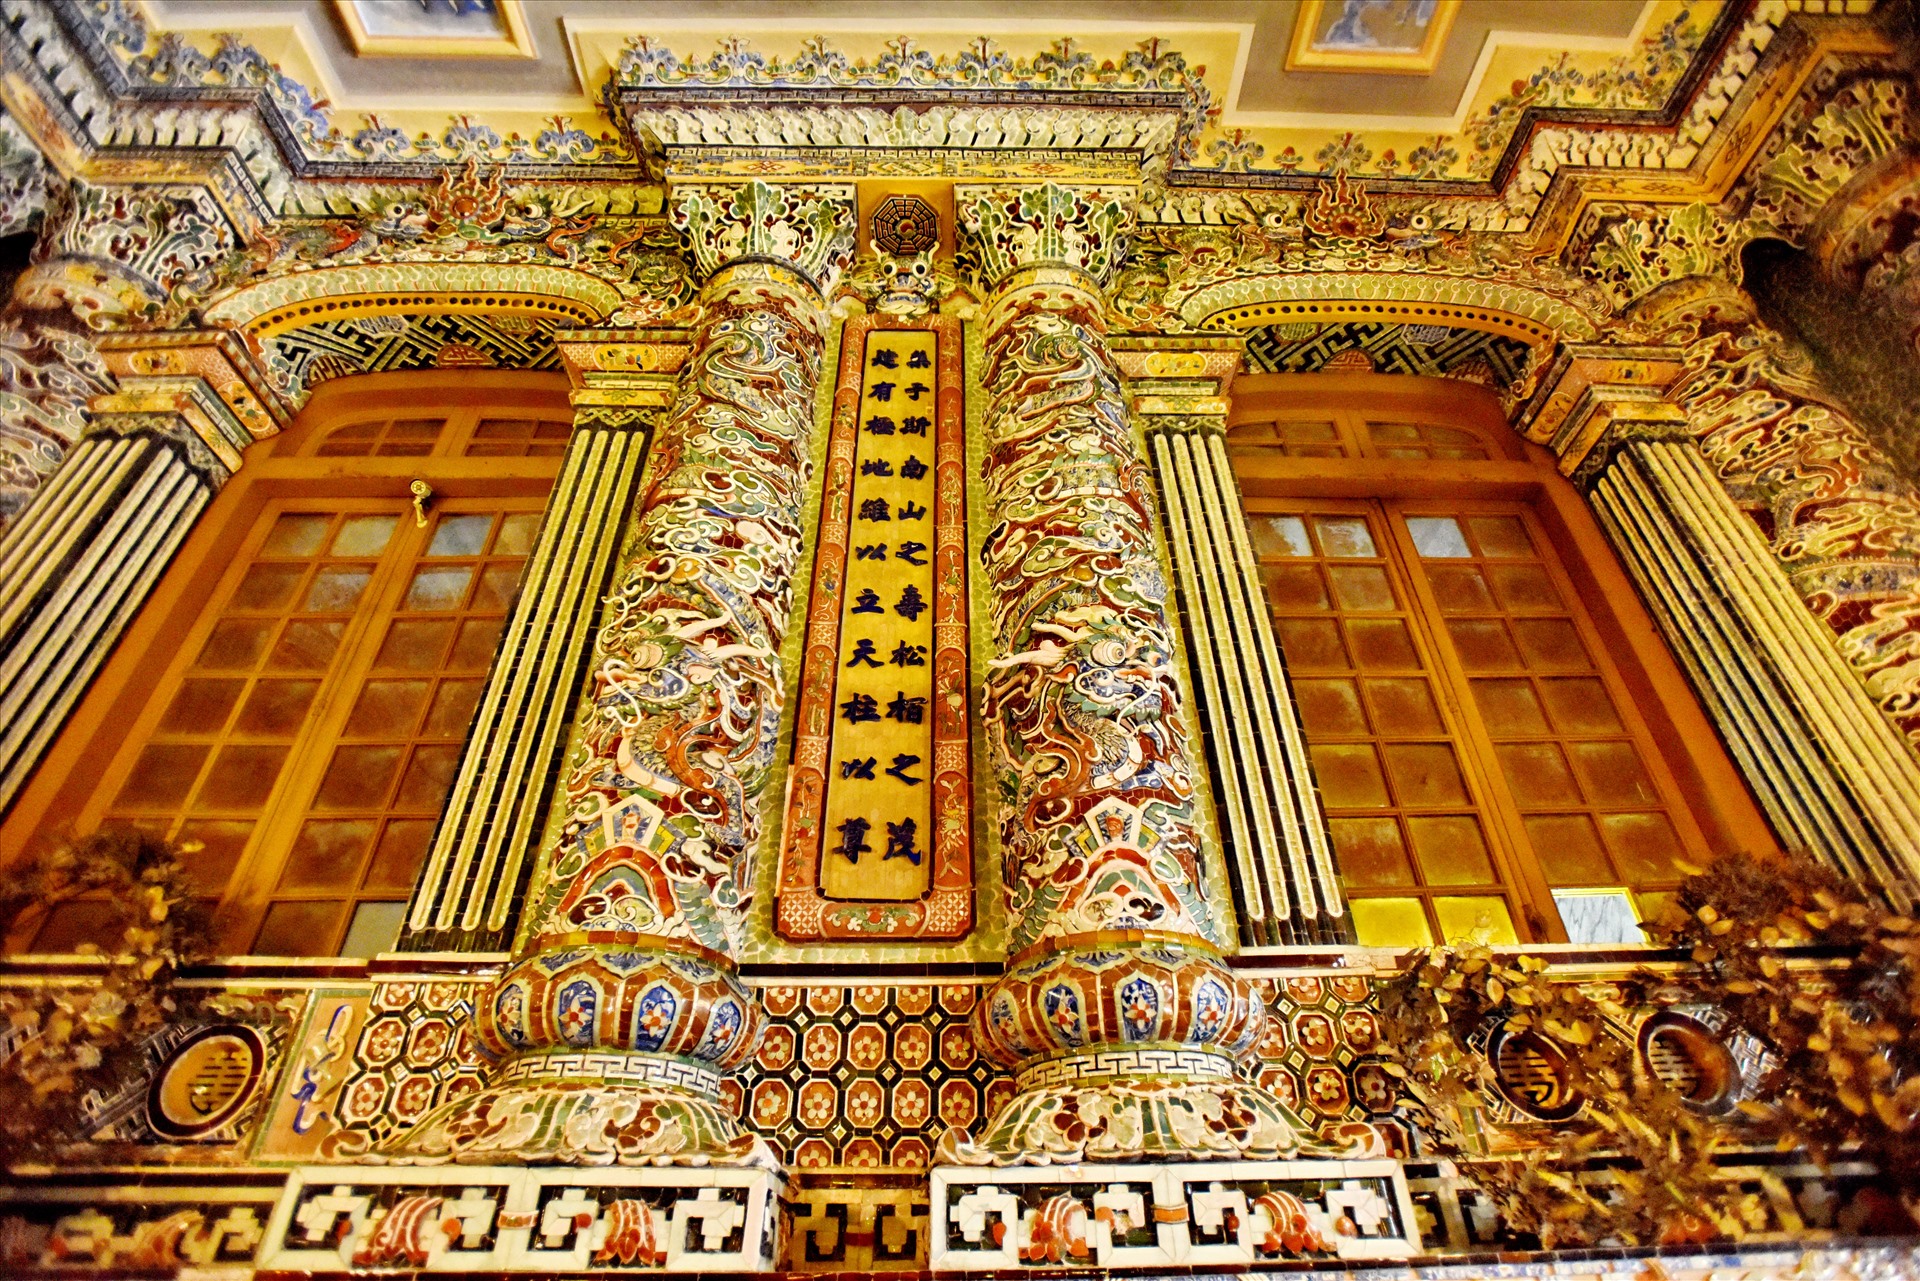 Toàn bộ cột rồng, cửa vòm, phào, chỉ... bên trong nội điện đều được khảm sành sứ và thủy tinh màu. Ảnh: Thái Hoàng